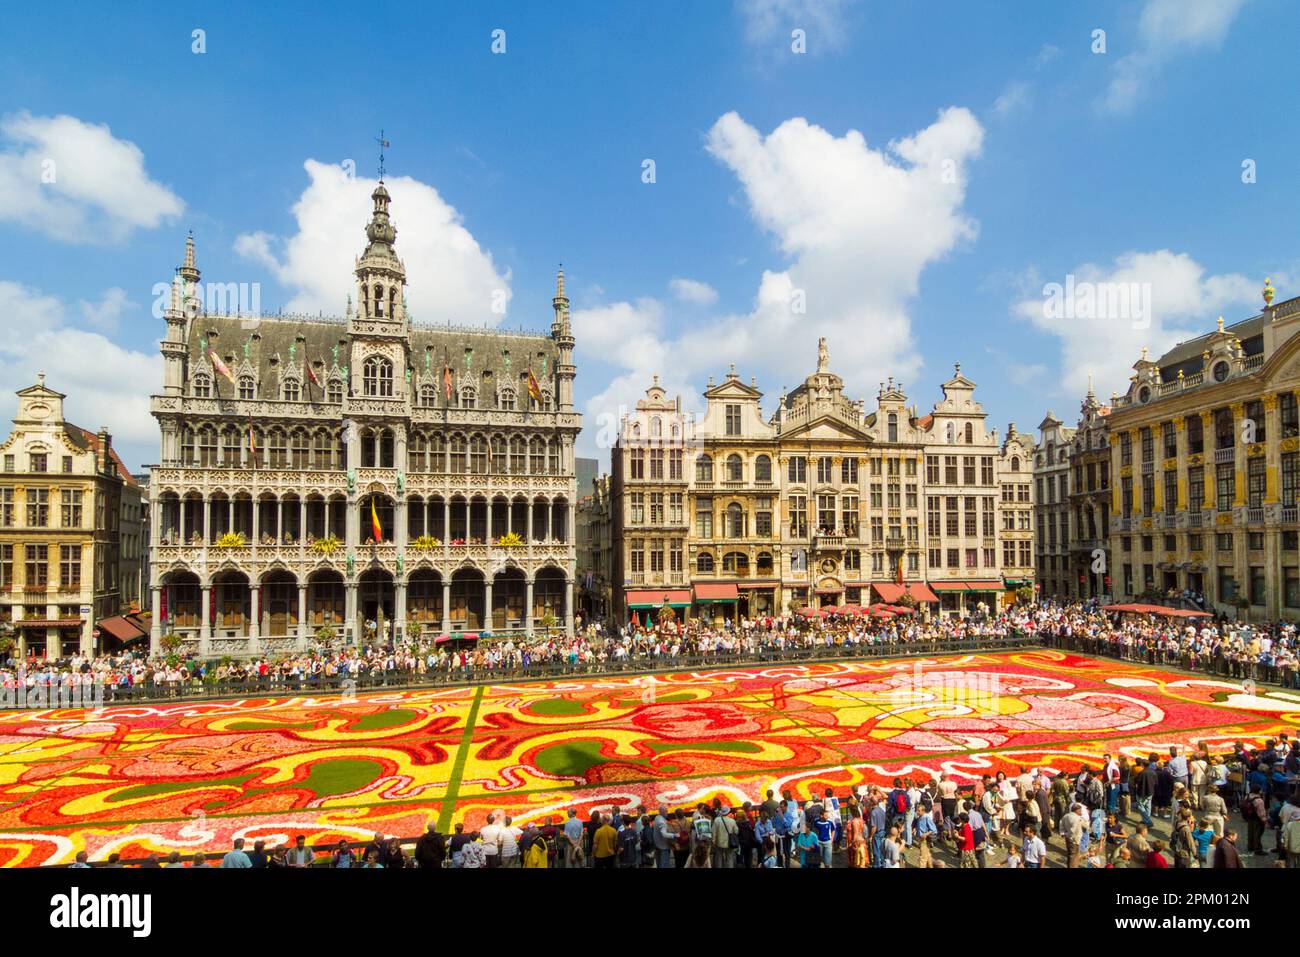 Bruxelles Grand-place Bruxelles montrant le thème art déco du tapis de fleurs Bruxelles Belgique UE Europe Banque D'Images